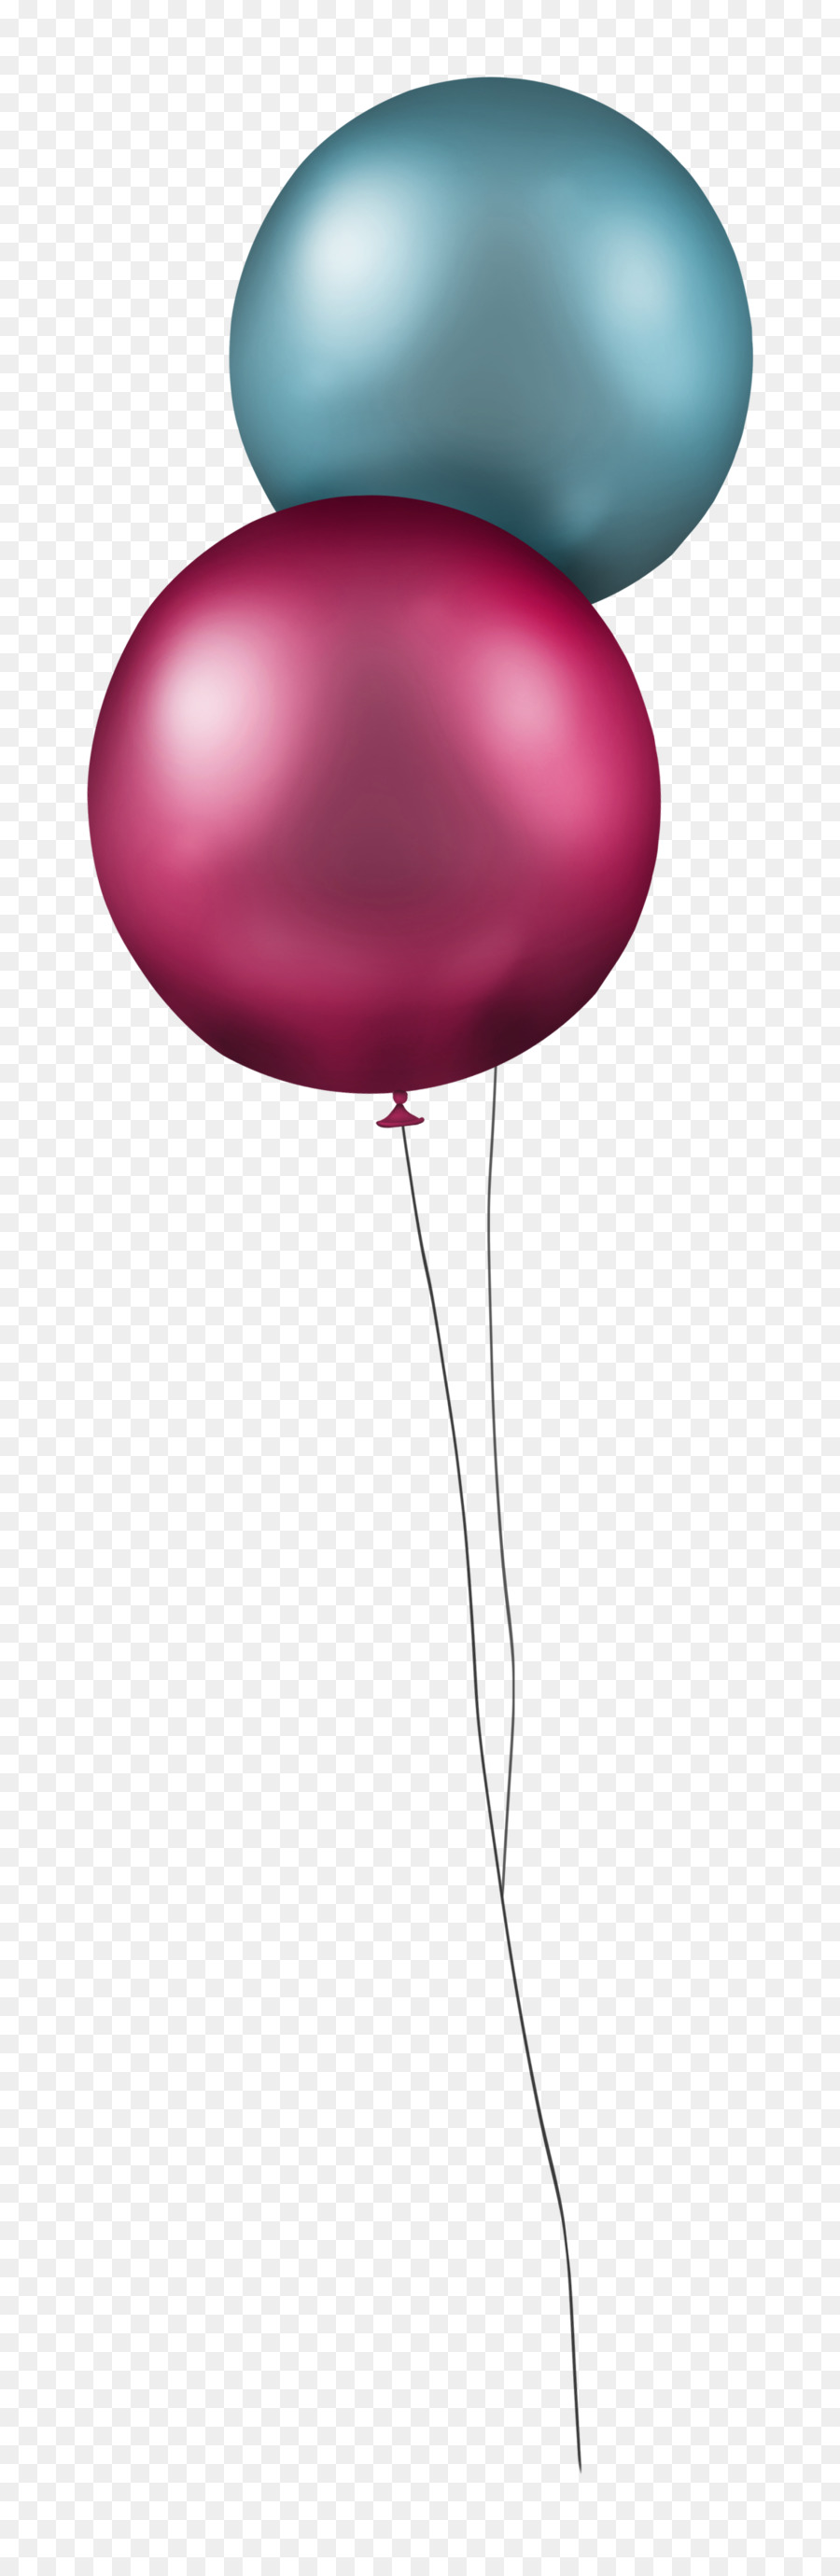 Icona Fumetto - due palloncini